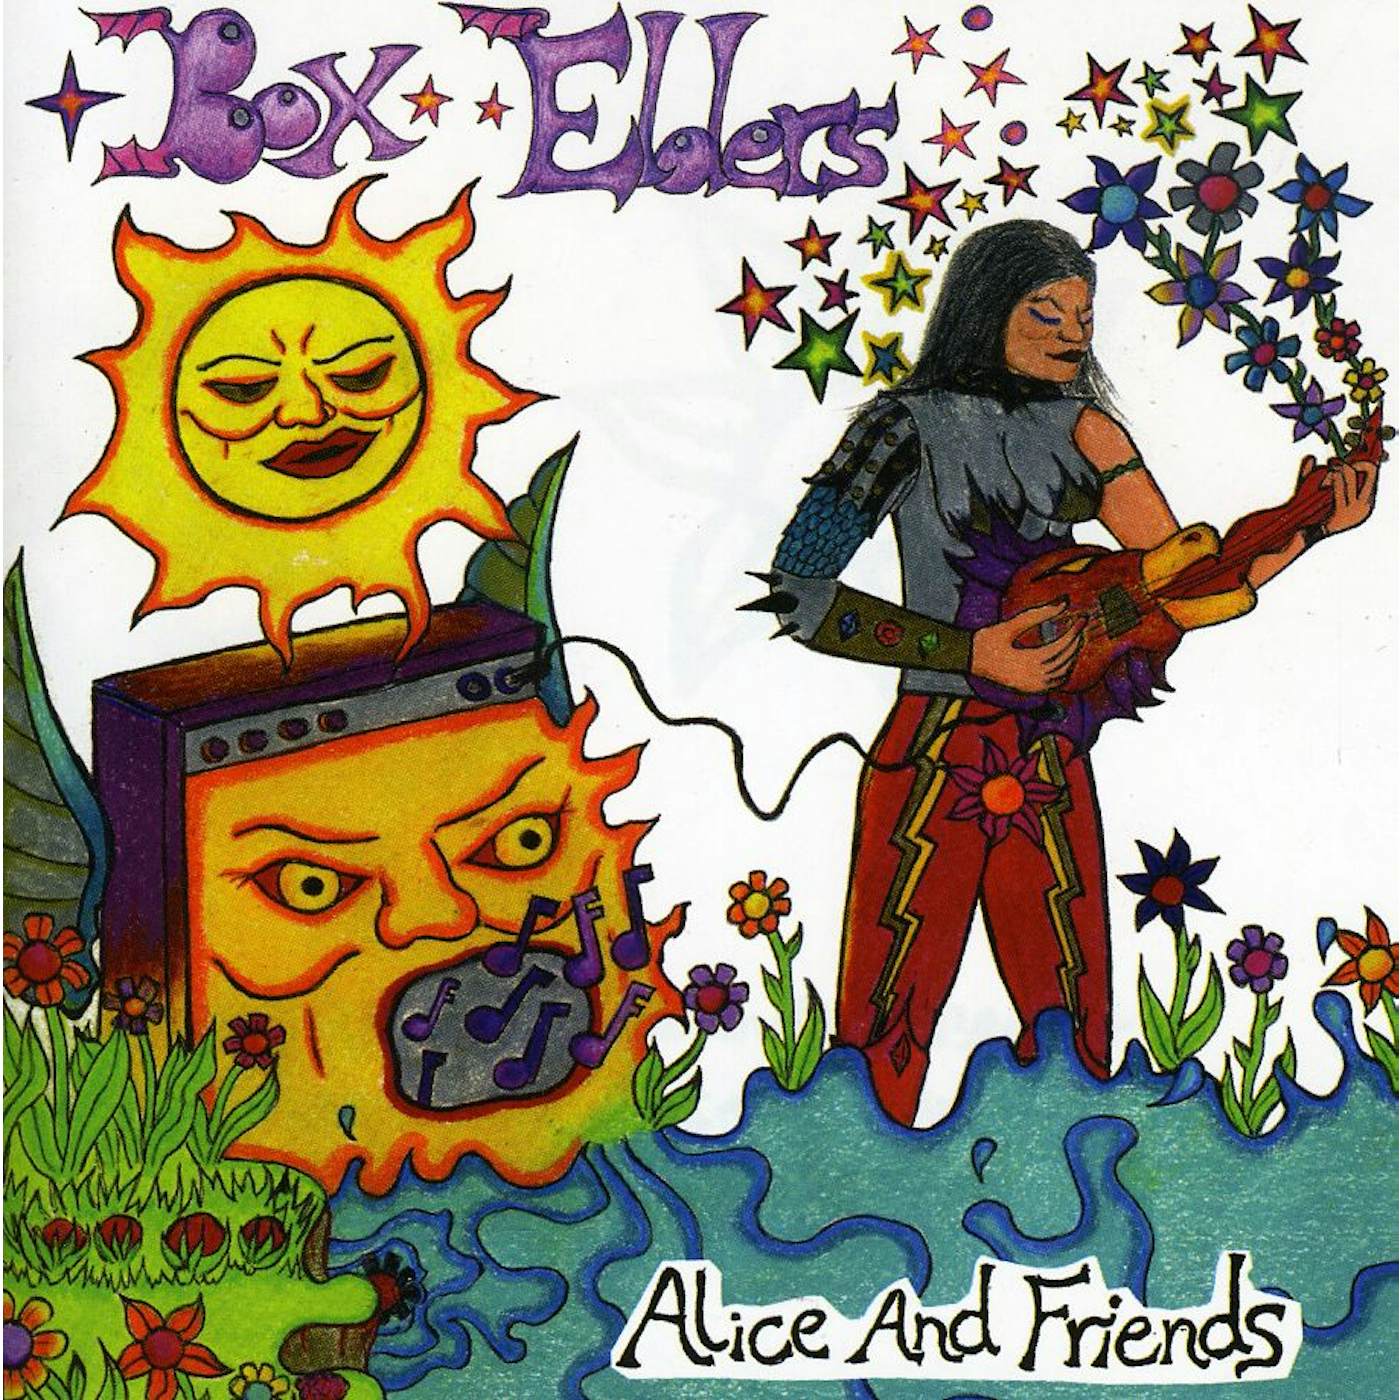 Box Elders ALICE & FRIENDS CD